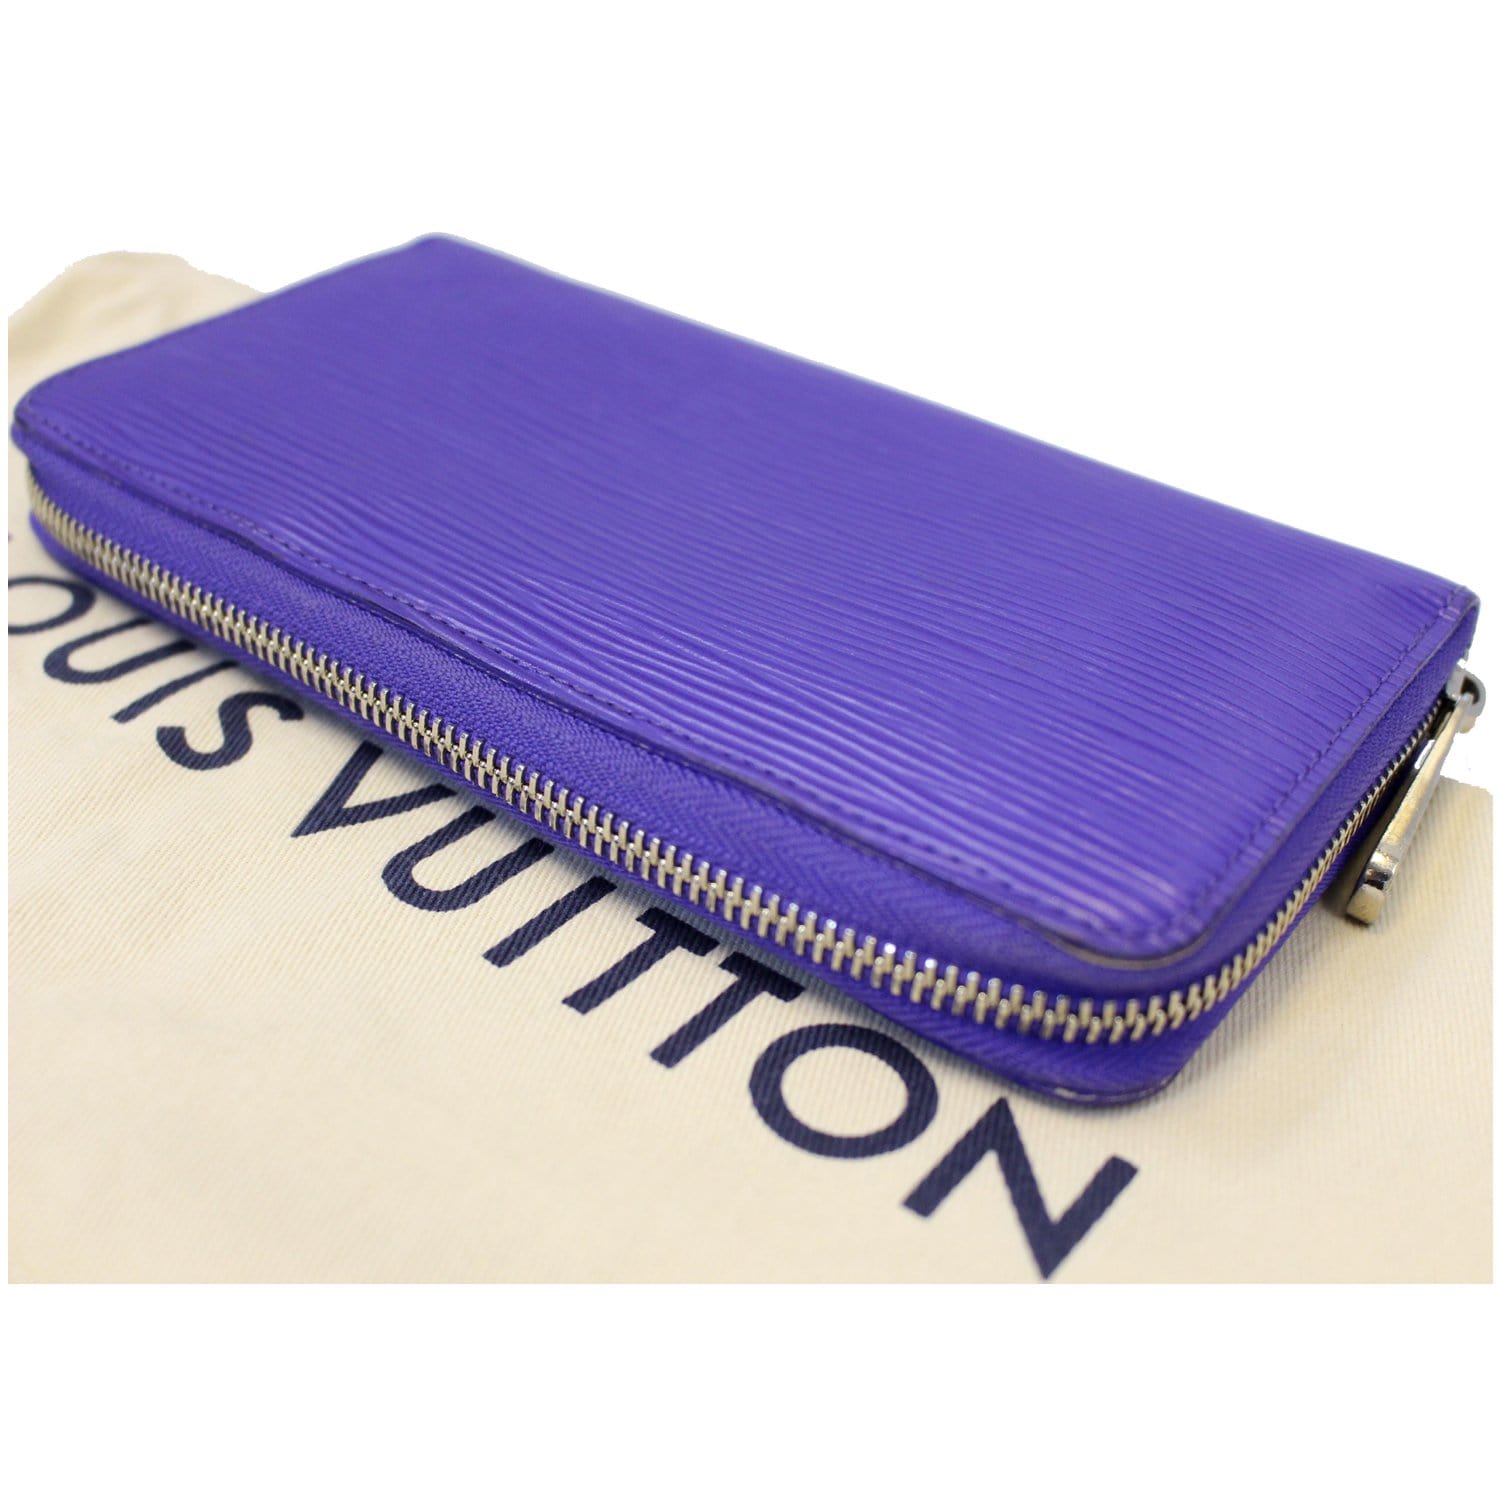 Louis Vuitton 2017 Epi Leather Zippy Wallet - Blue Wallets, Accessories -  LOU480169